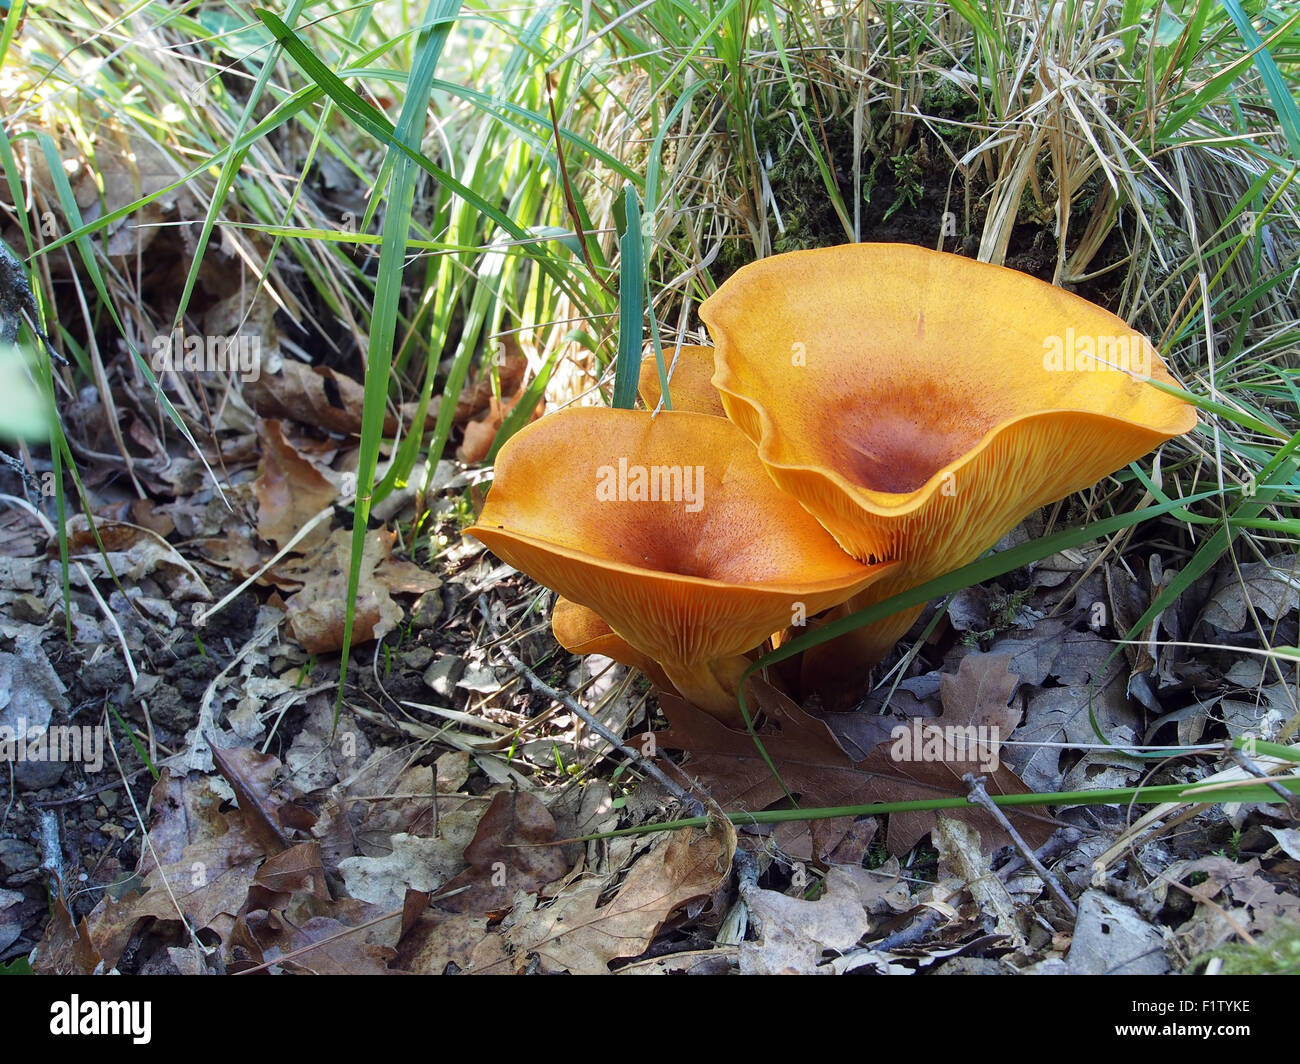 Omphalotus olearius, comúnmente conocido como el jack-o'-lantern, es un hongo venenoso hongo sin branquias de color naranja. Bioluminiscente. Foto de stock